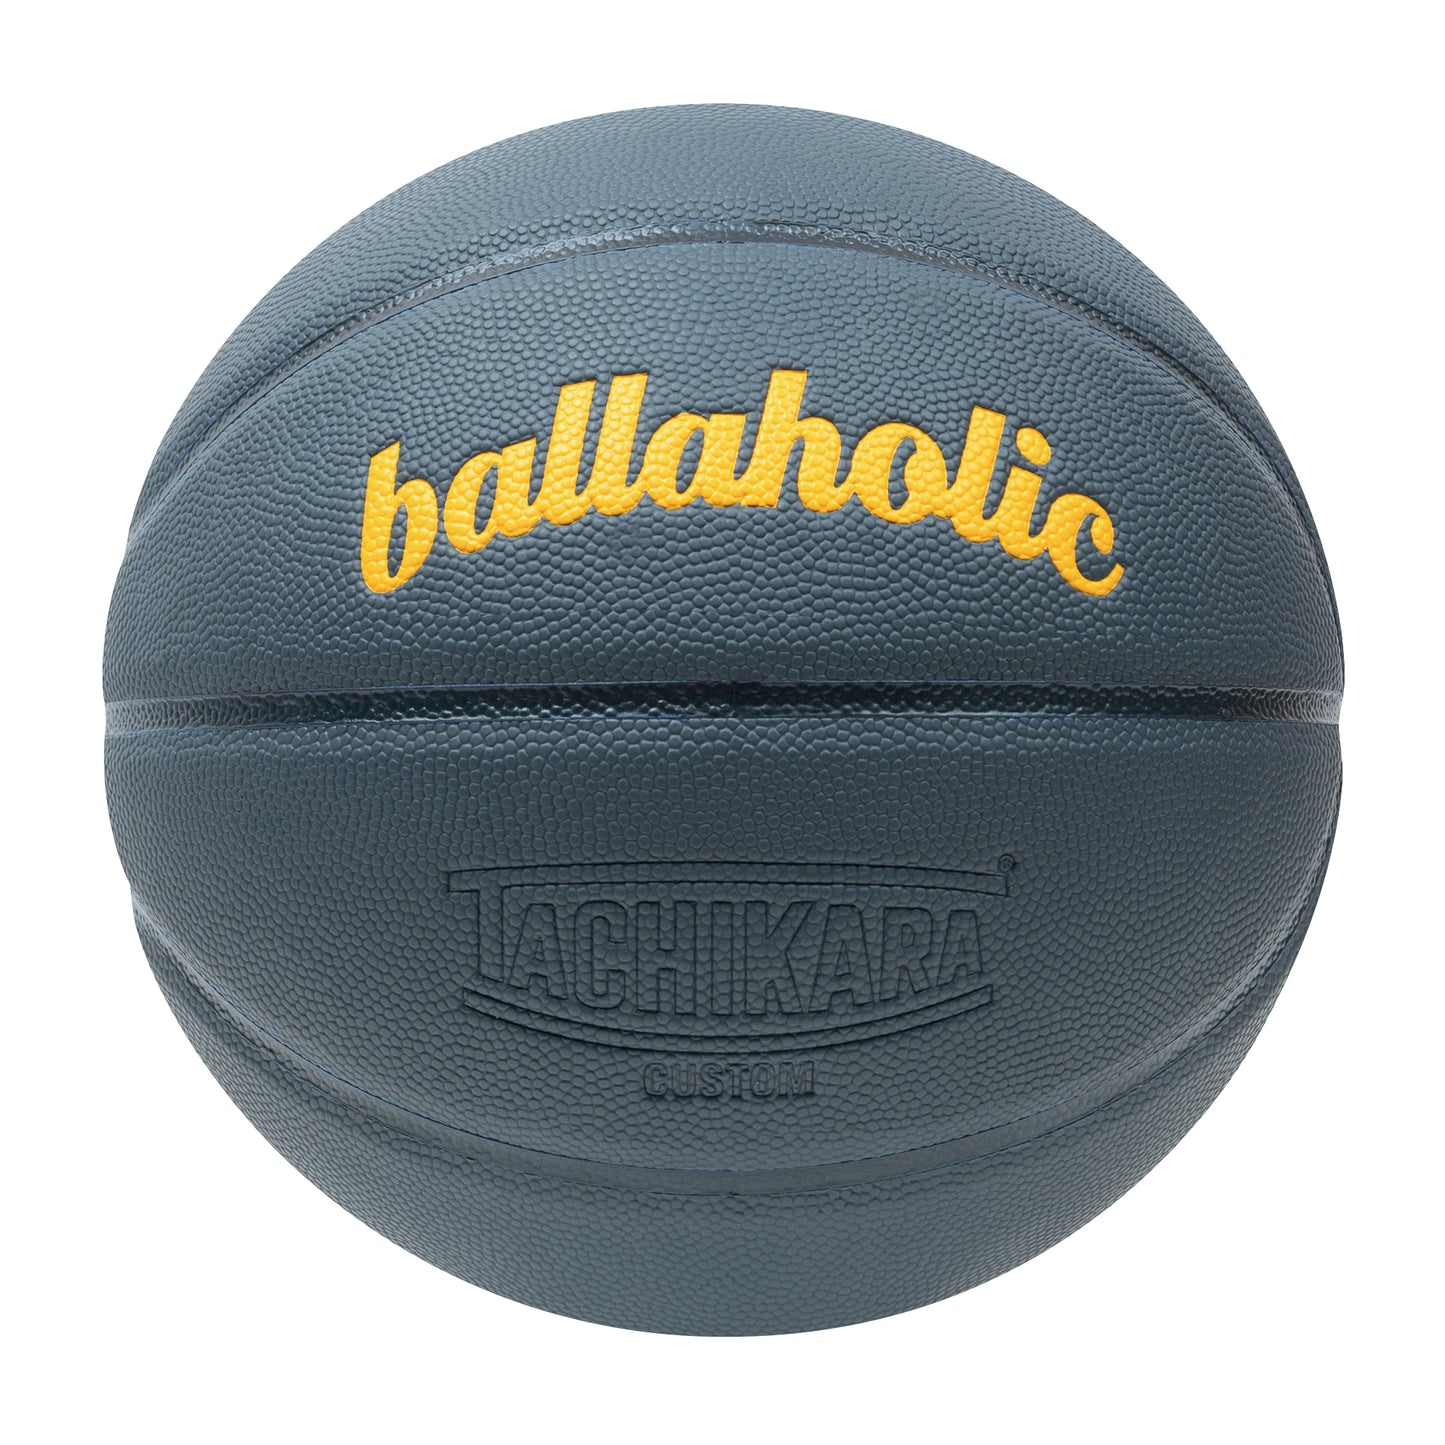 Playground Basketball / ballaholic x TACHIKARA (slate blue/dark navy/yellow) 5